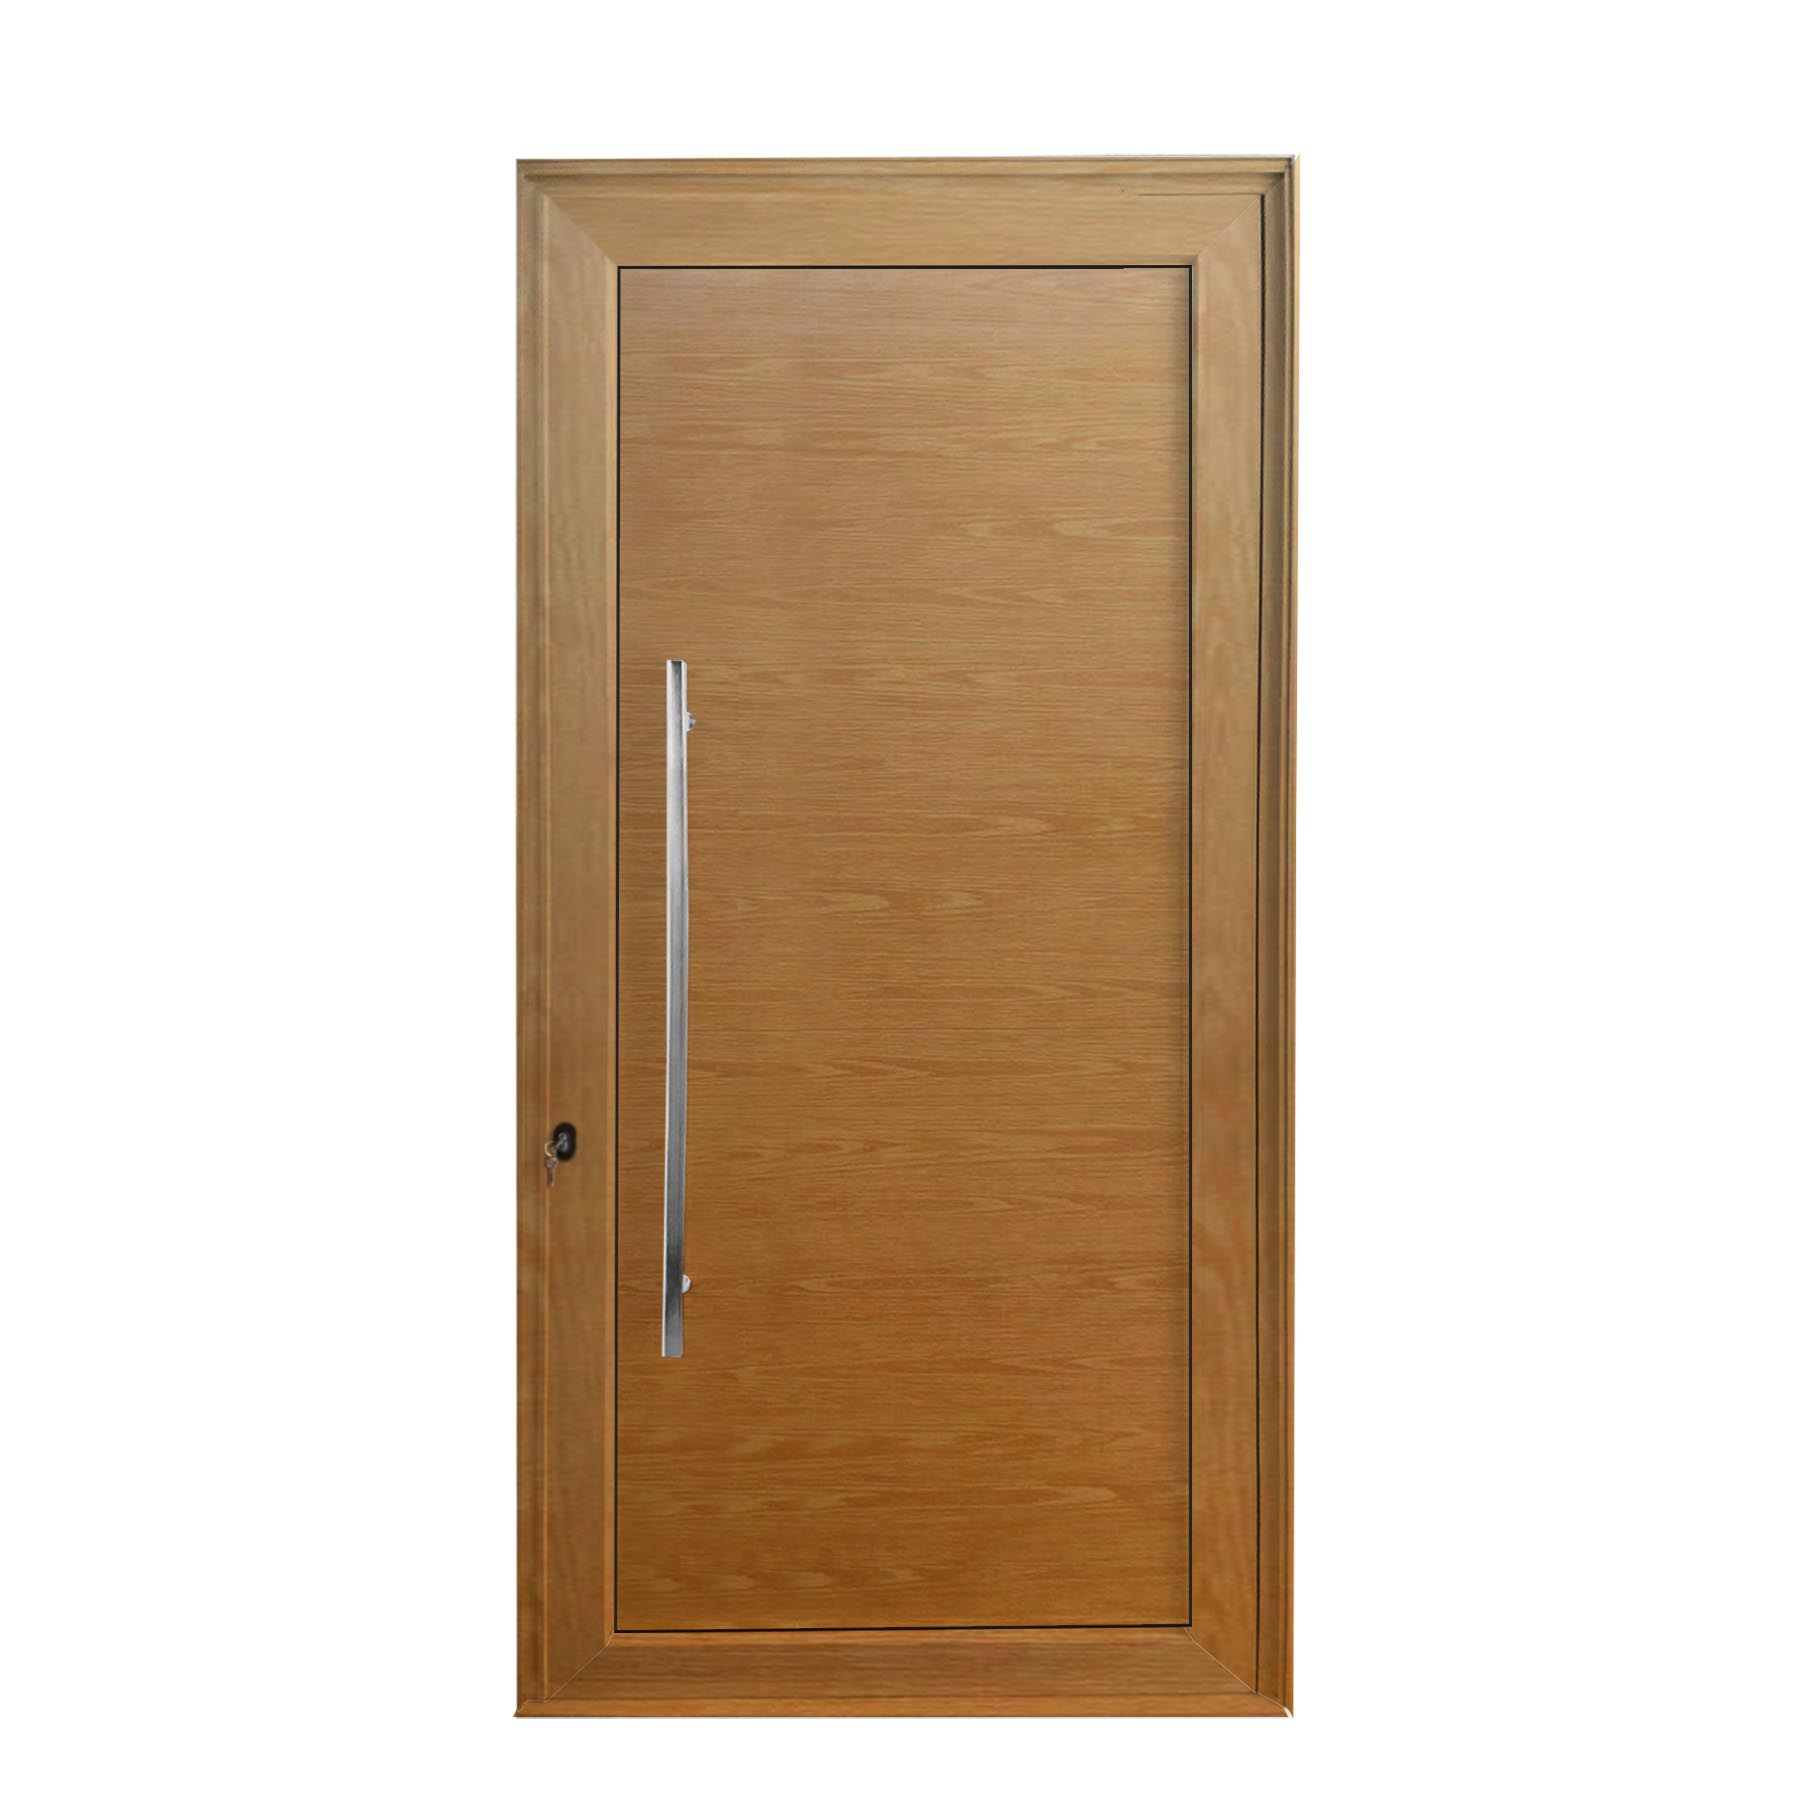 Porta de abrir 1 folha lambri cor madeira 98 x 215 com puxador inox de 100cm - fechadura monoponto ( lado direito) - Sociale